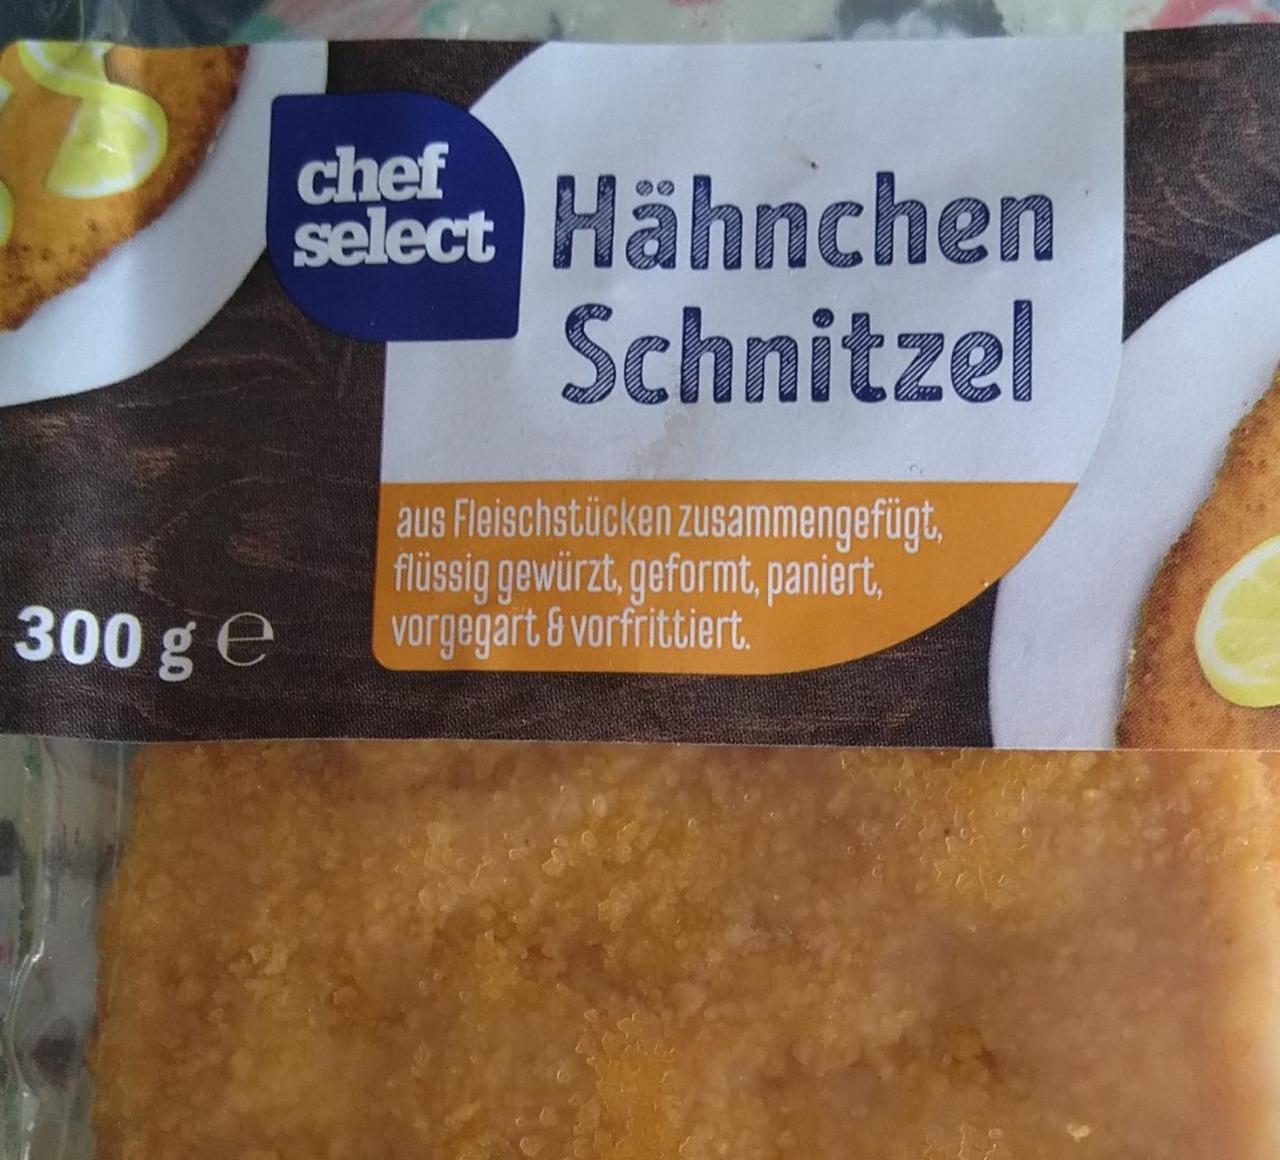 Schnitzel - Hähnchen Chef Select kalorie, hodnoty nutriční kJ a